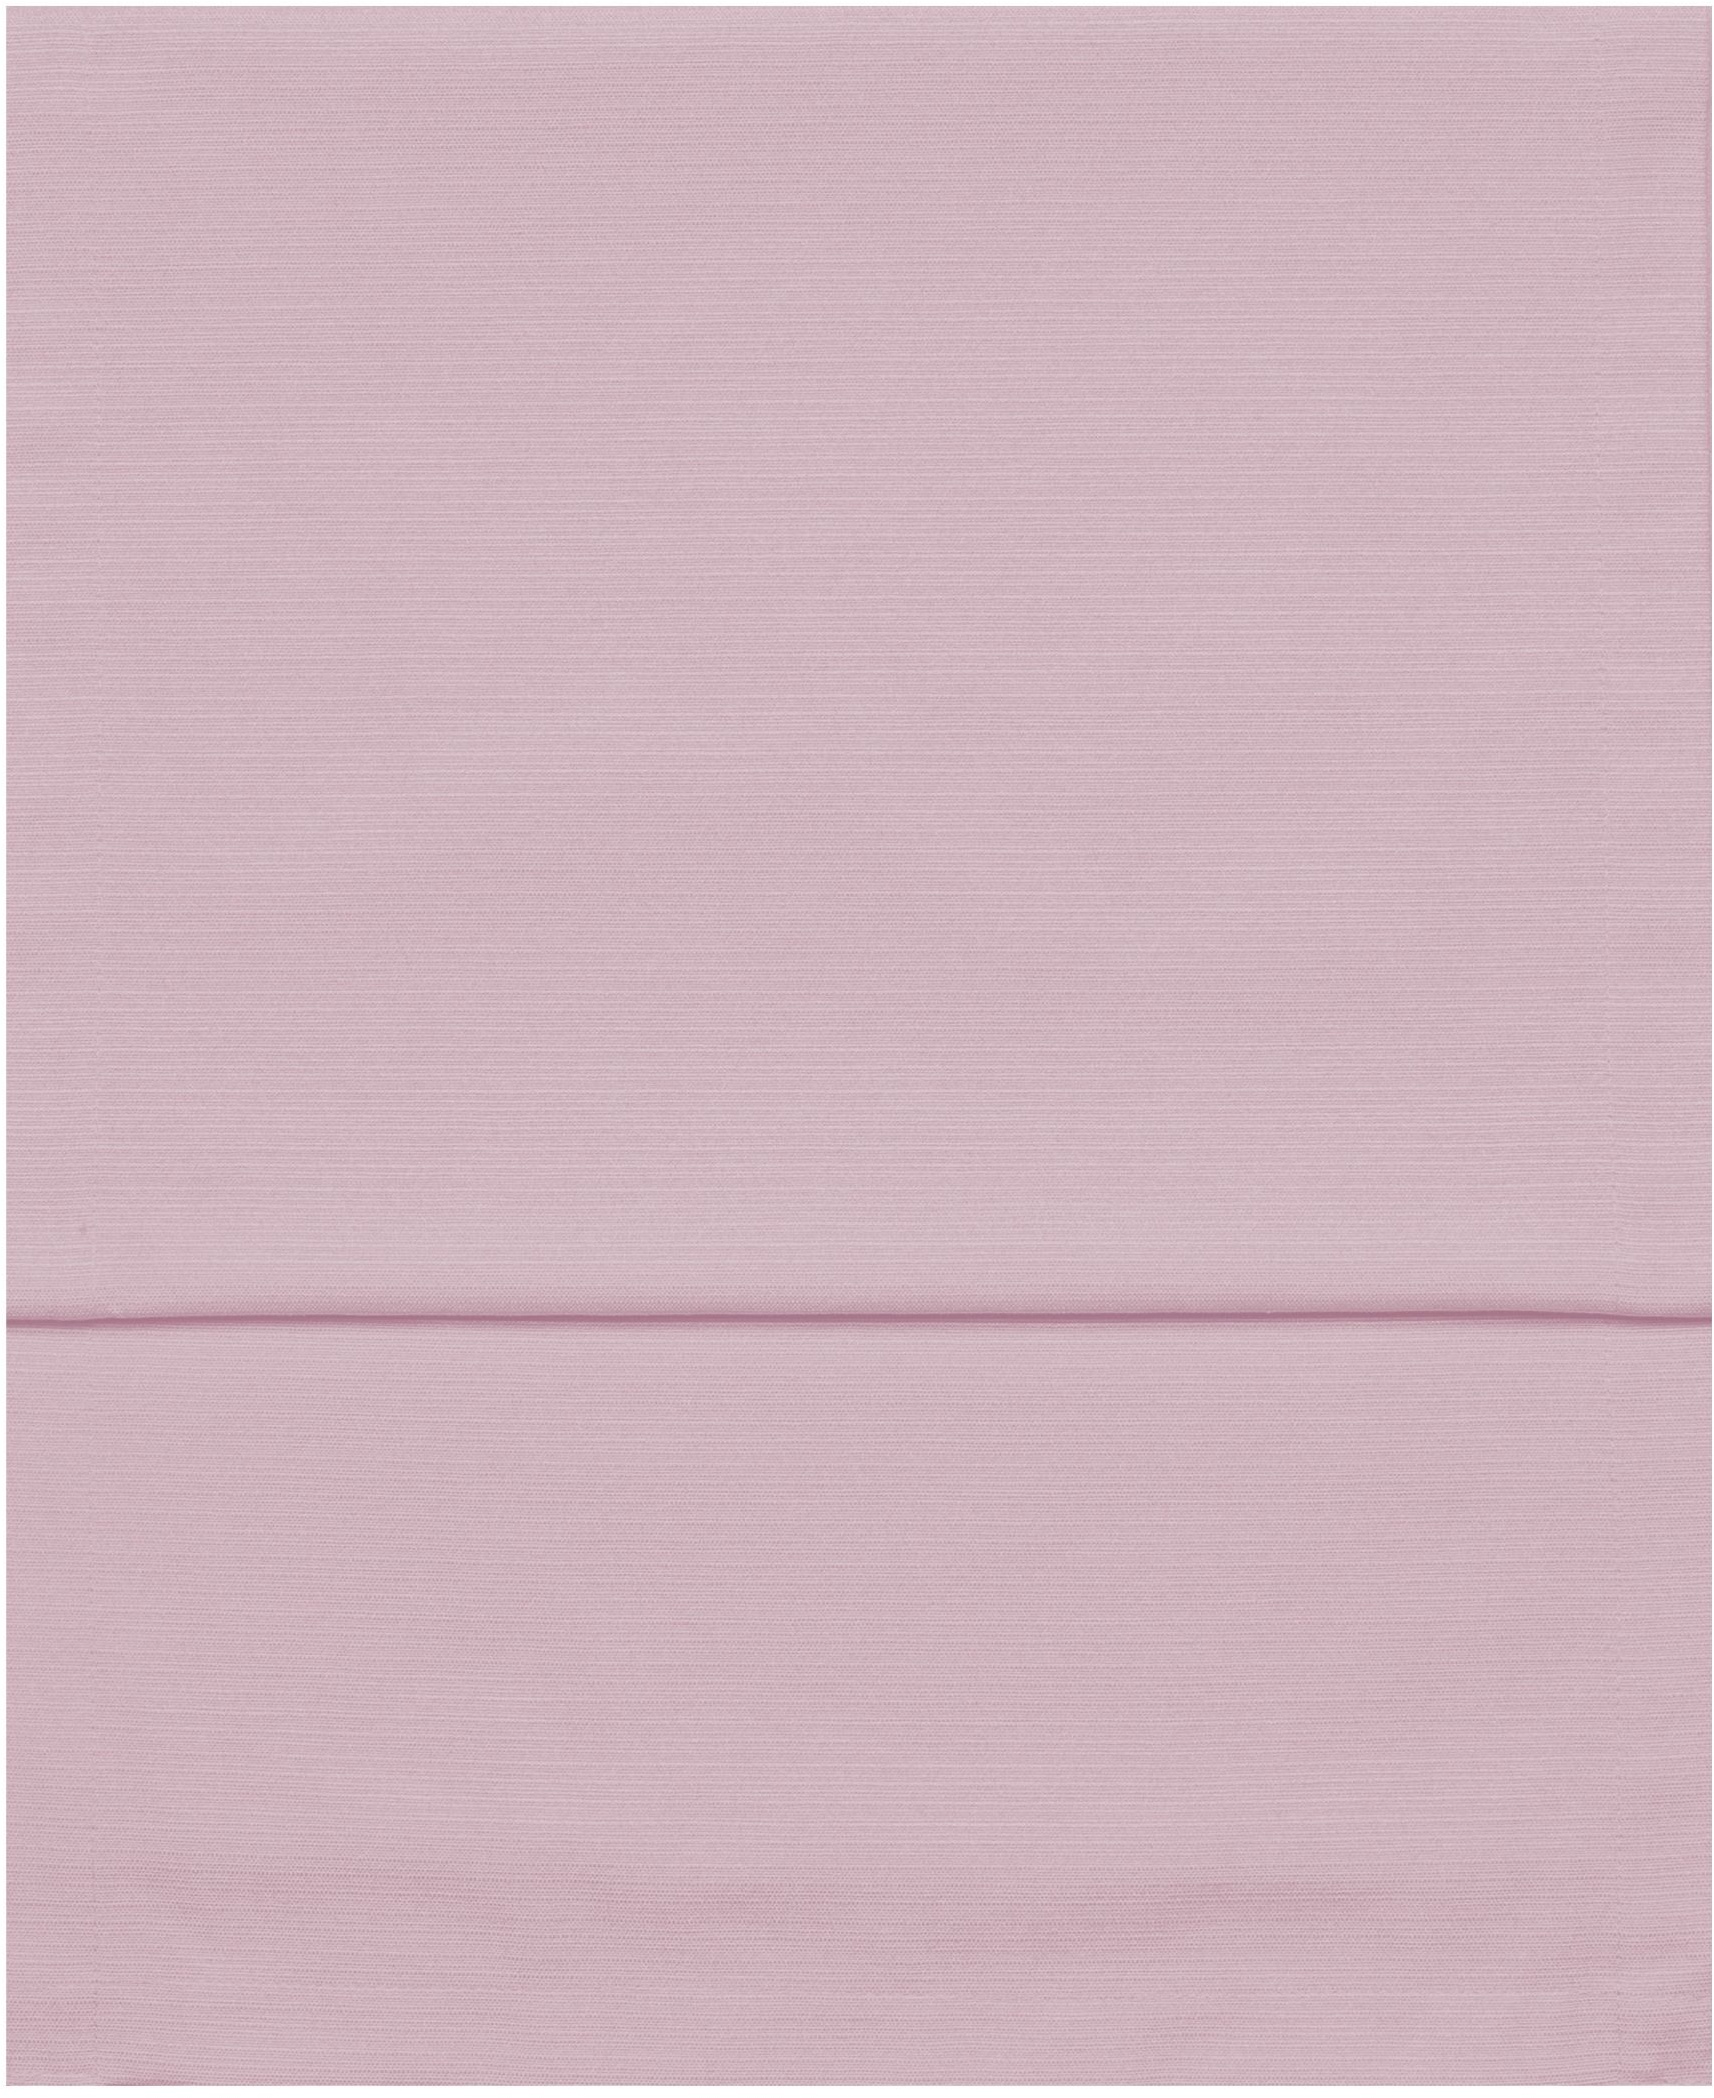 Tischläufer FINO altrose (LB 150x40 cm) - rosa